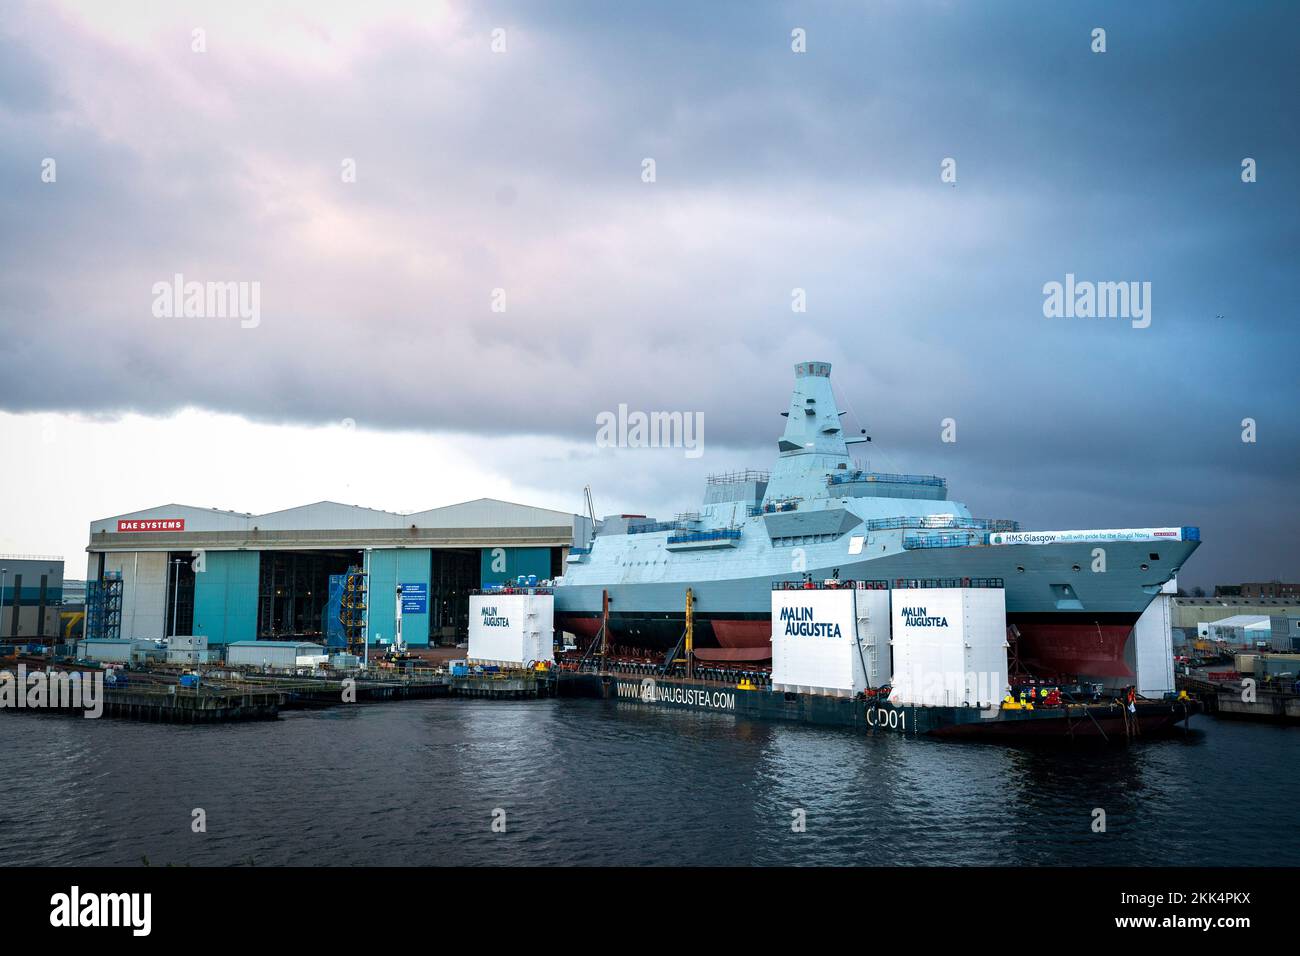 HMS Glasgow wird auf einem Kahn auf der BAE Govan Werft in Glasgow manövriert, bevor sie zur nahe gelegenen Scotstoun Werft am Fluss Clyde gebracht wird. HMS Glasgow ist die erste Fregatte des Typs 26, die auf der Clyde gebaut wurde. Foto: Freitag, 25. November 2022. Stockfoto